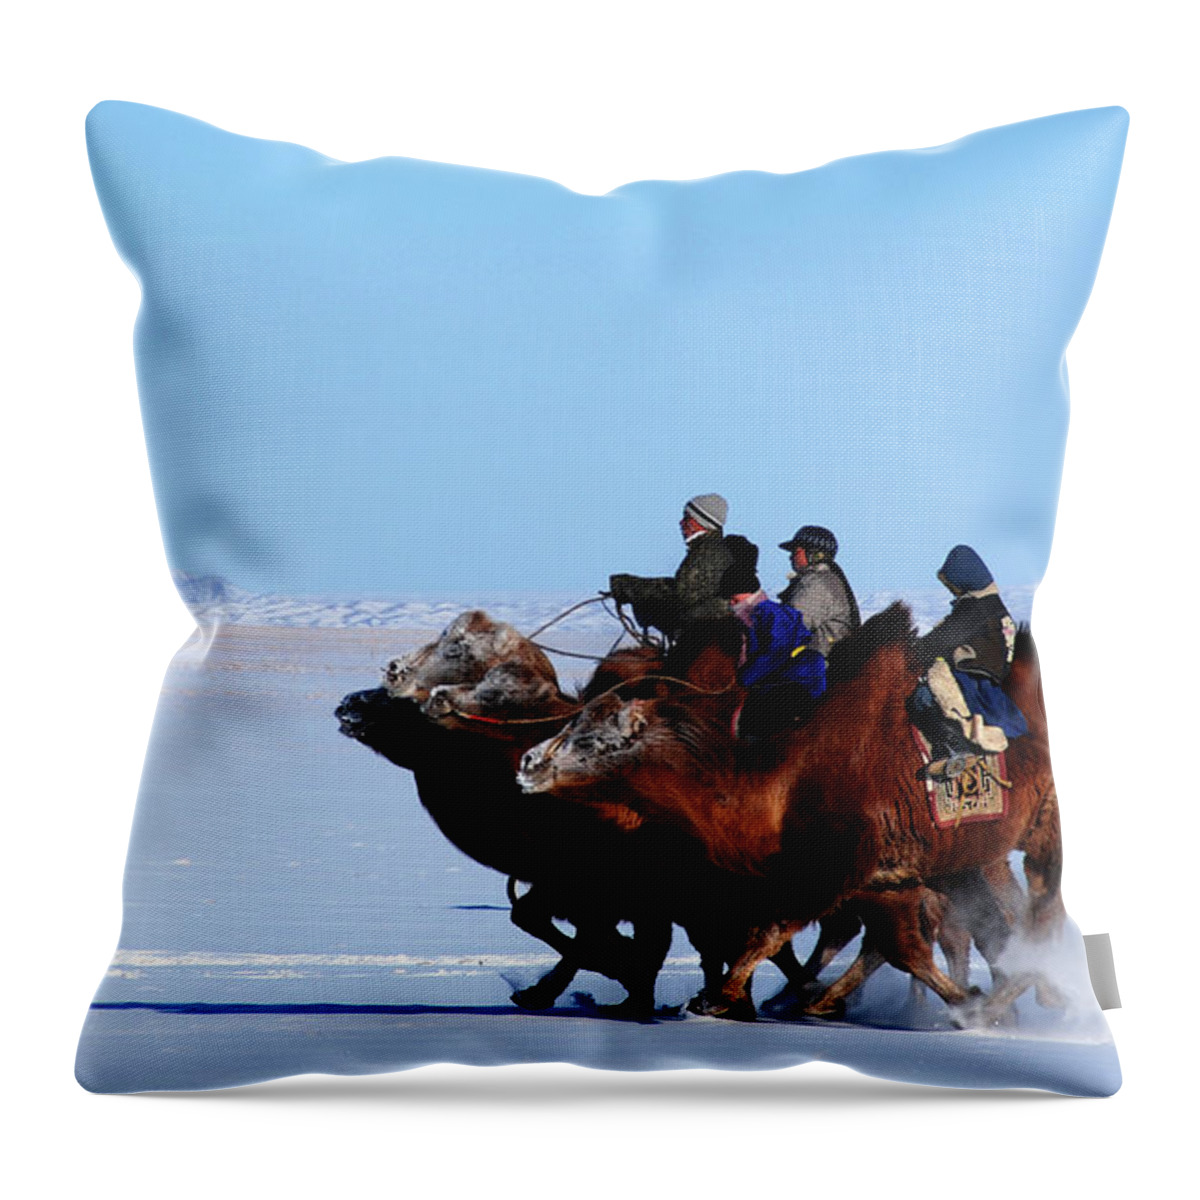 Winter Camel Racing Throw Pillow featuring the photograph Winter Camel racing by Elbegzaya Lkhagvasuren